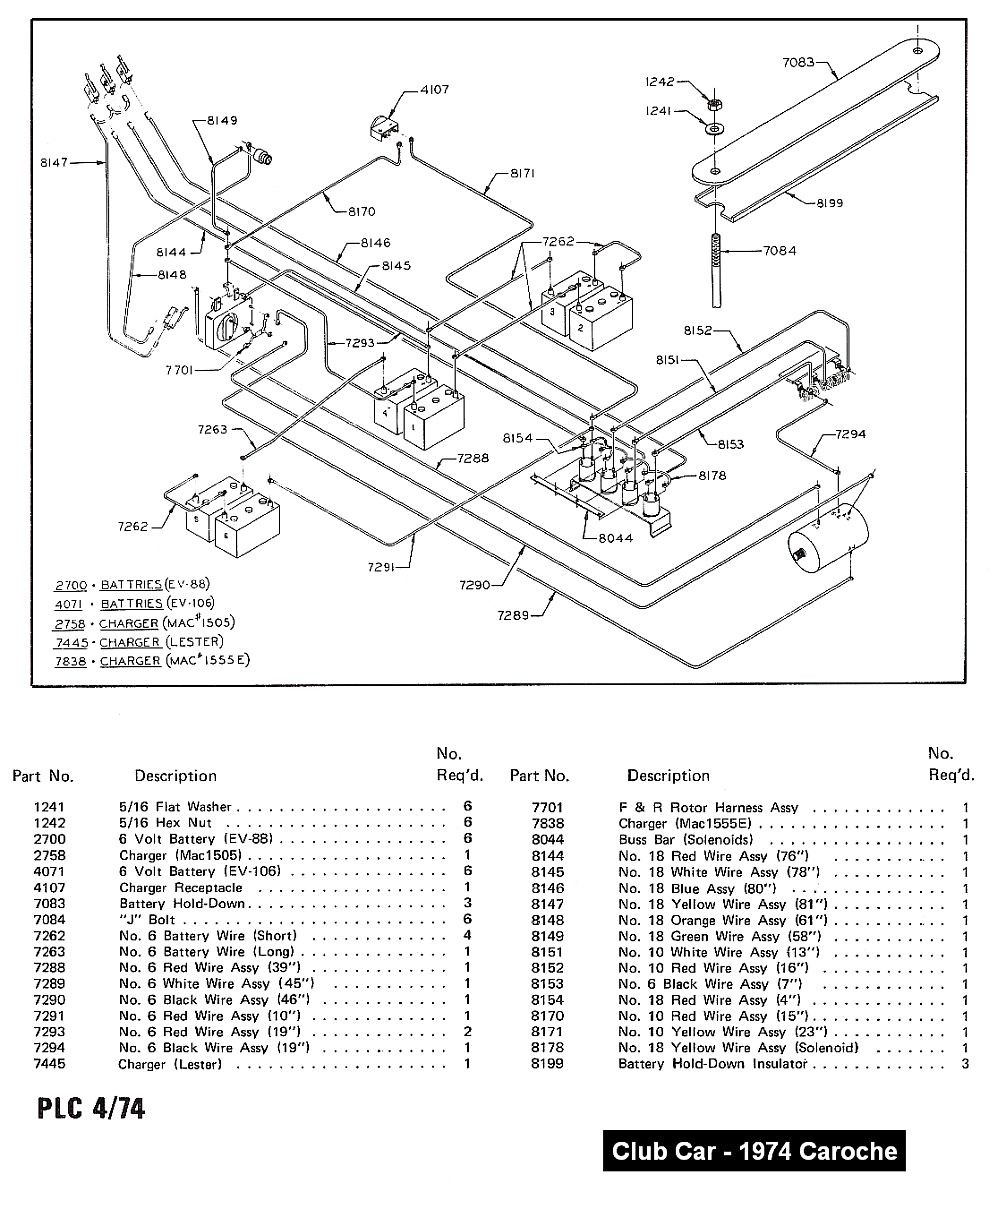 2000 Inside Ingersoll Rand Club Car Wiring Diagram